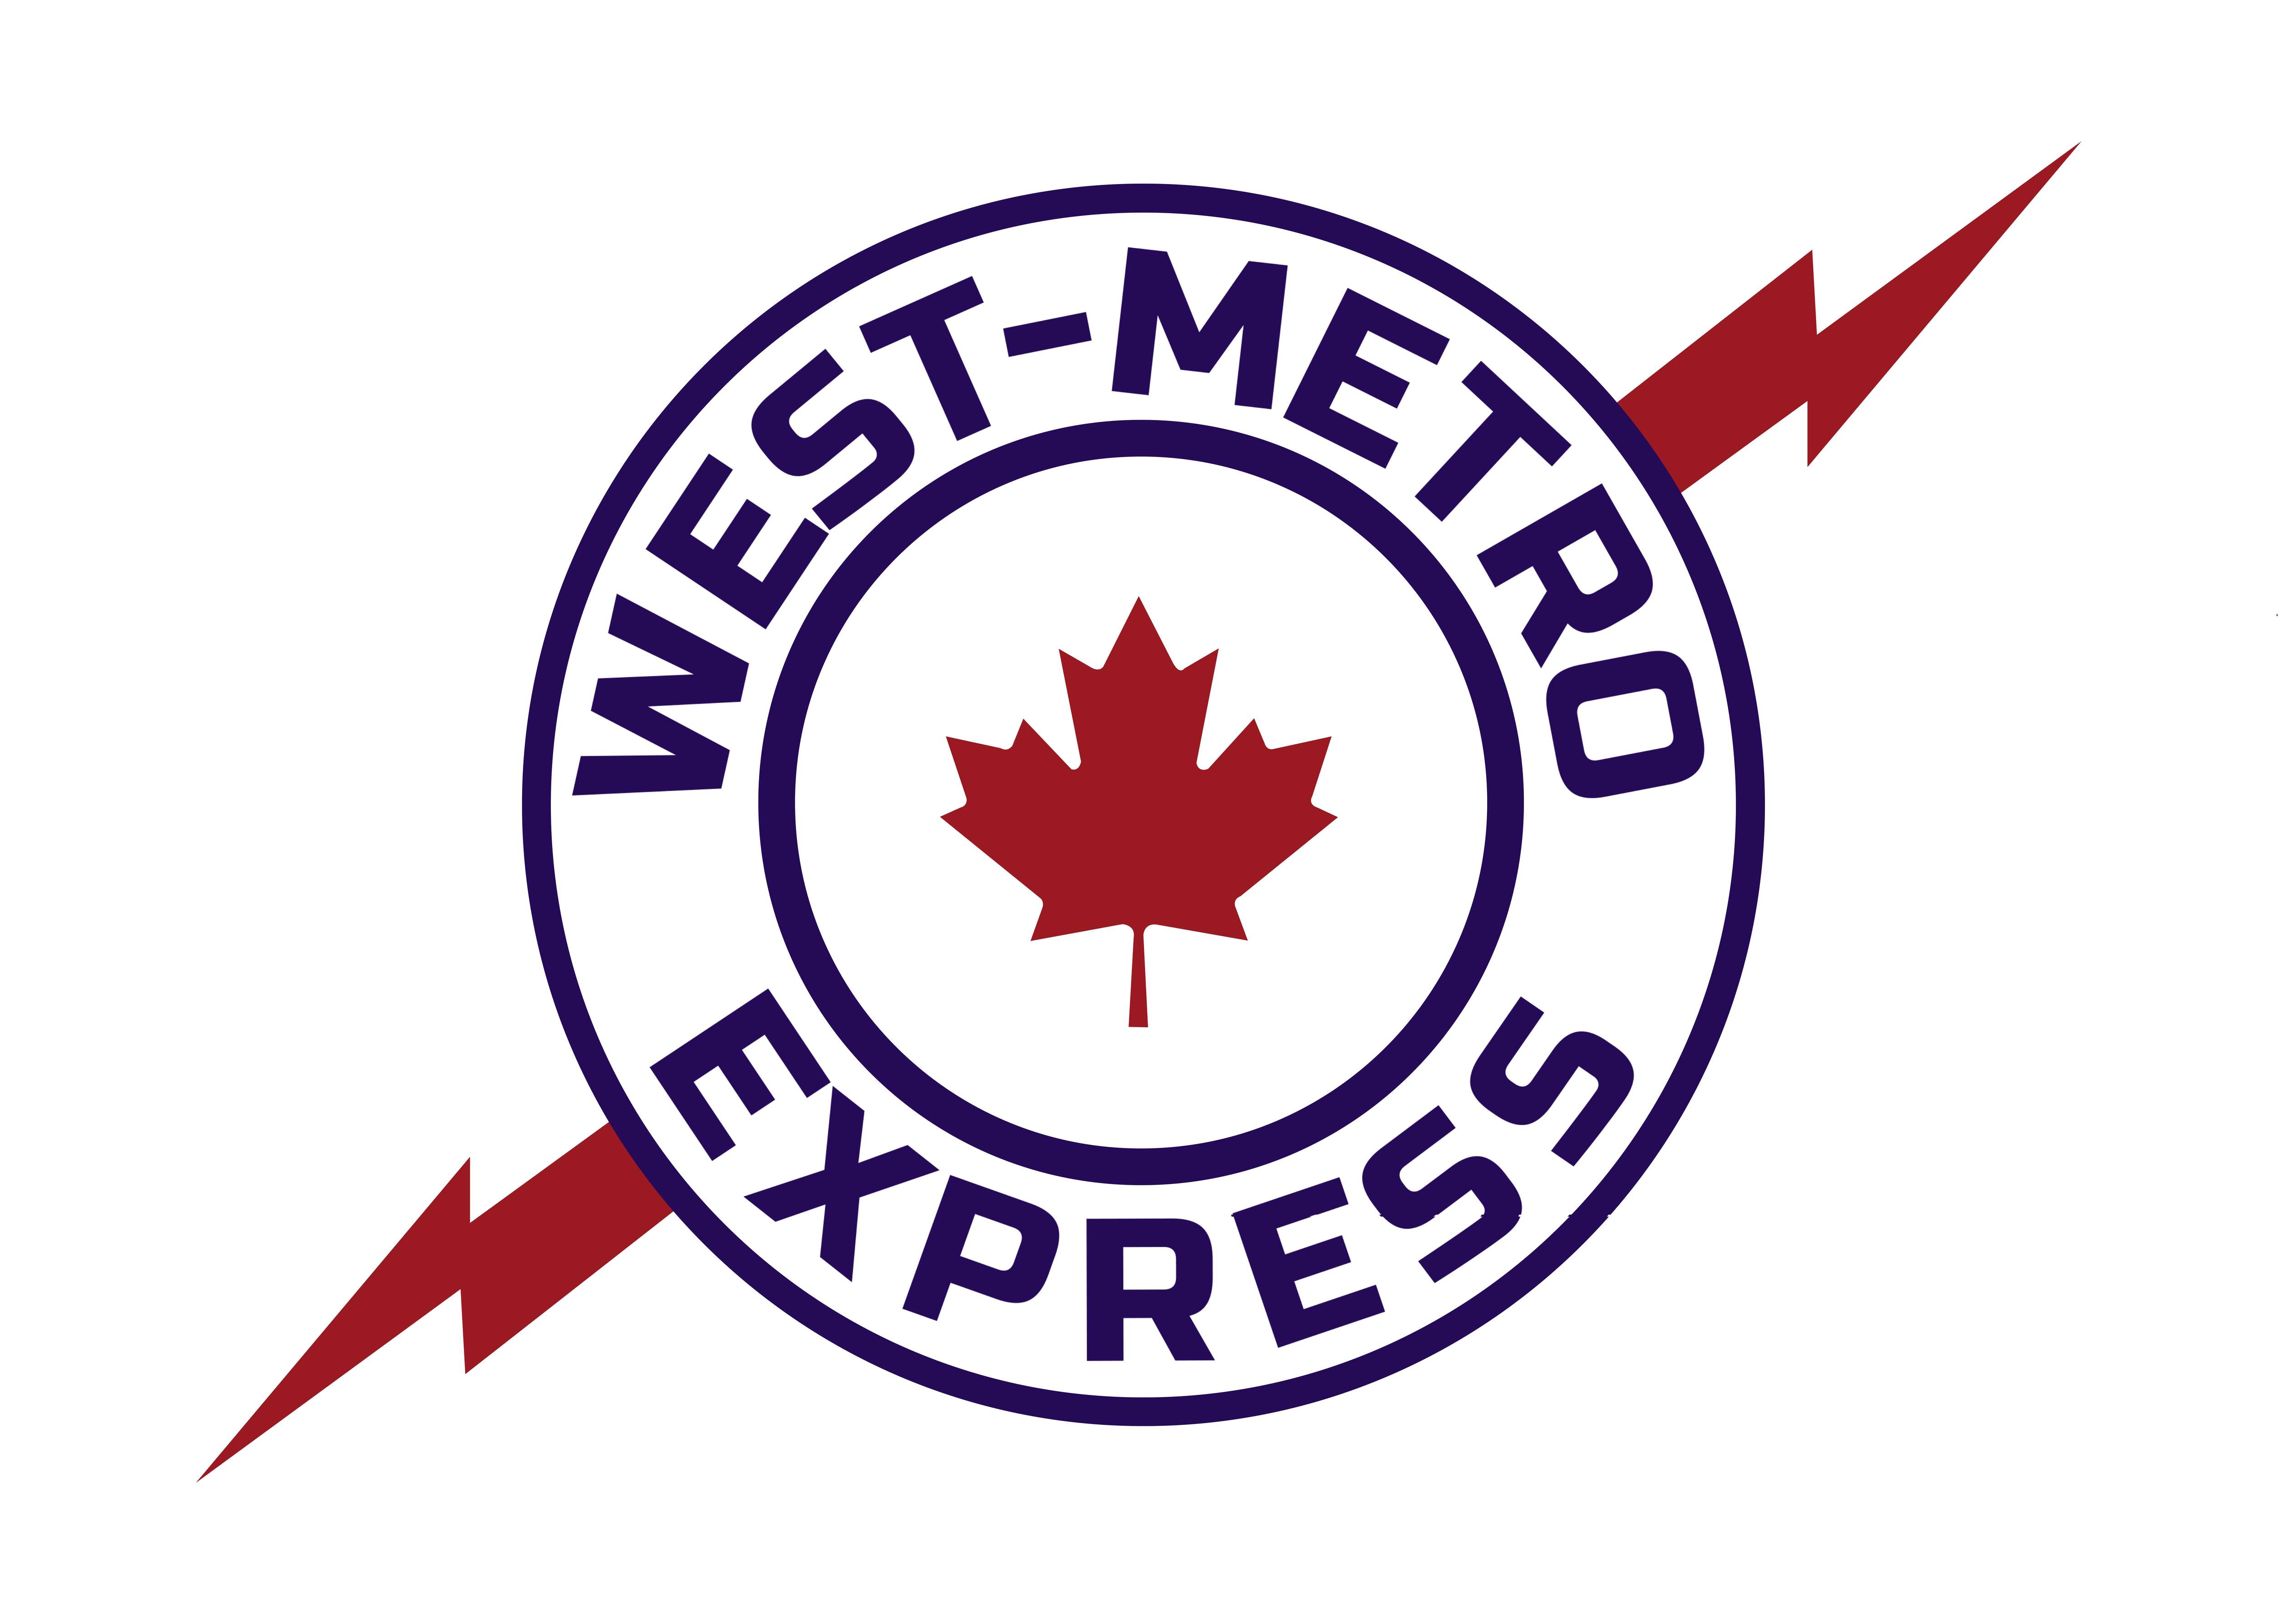 West Metro Express